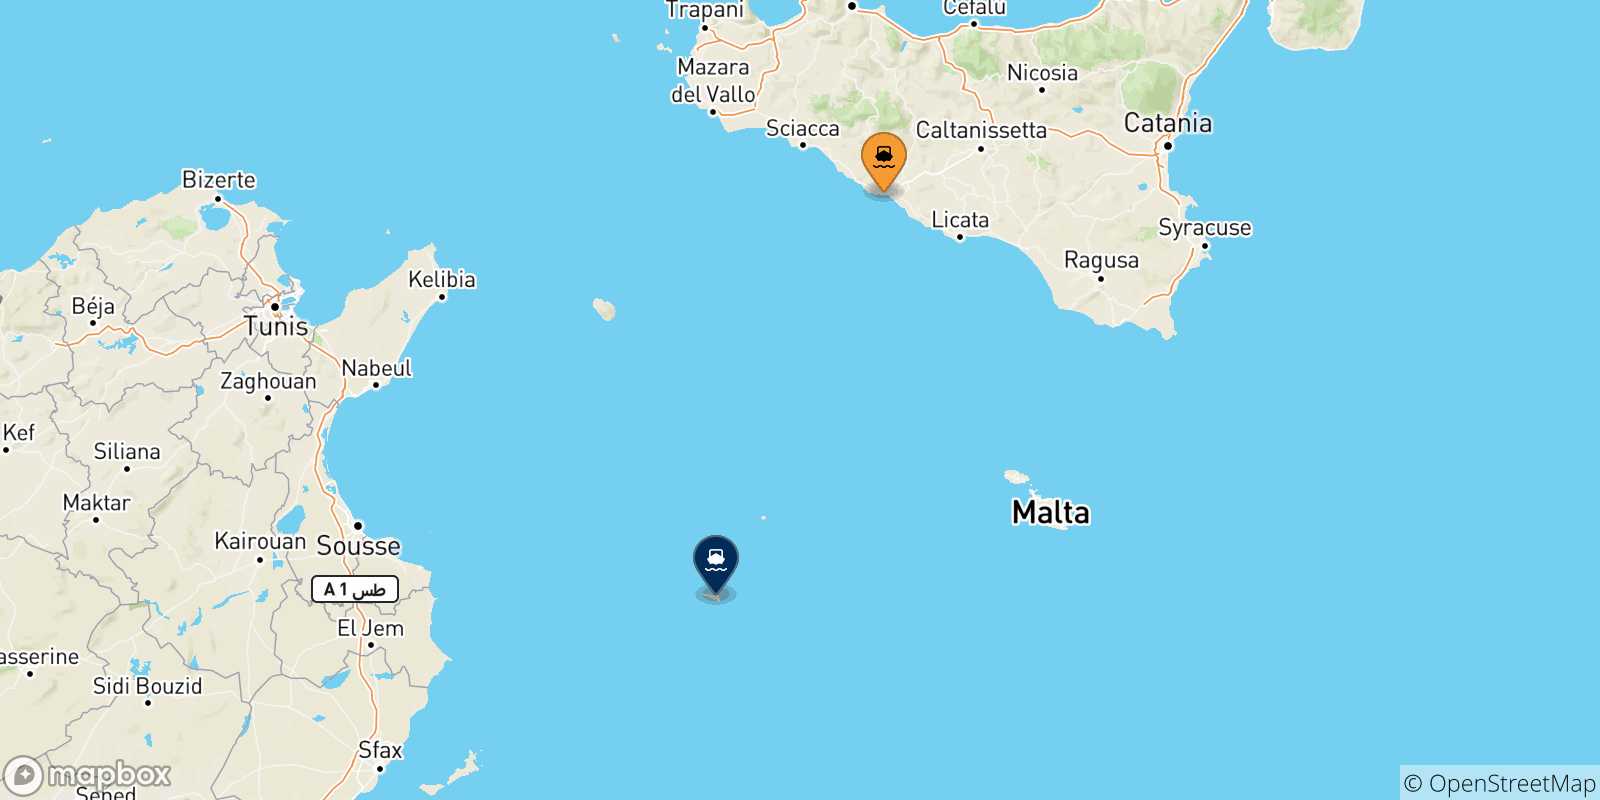 Mappa delle possibili rotte tra la Sicilia e Lampedusa